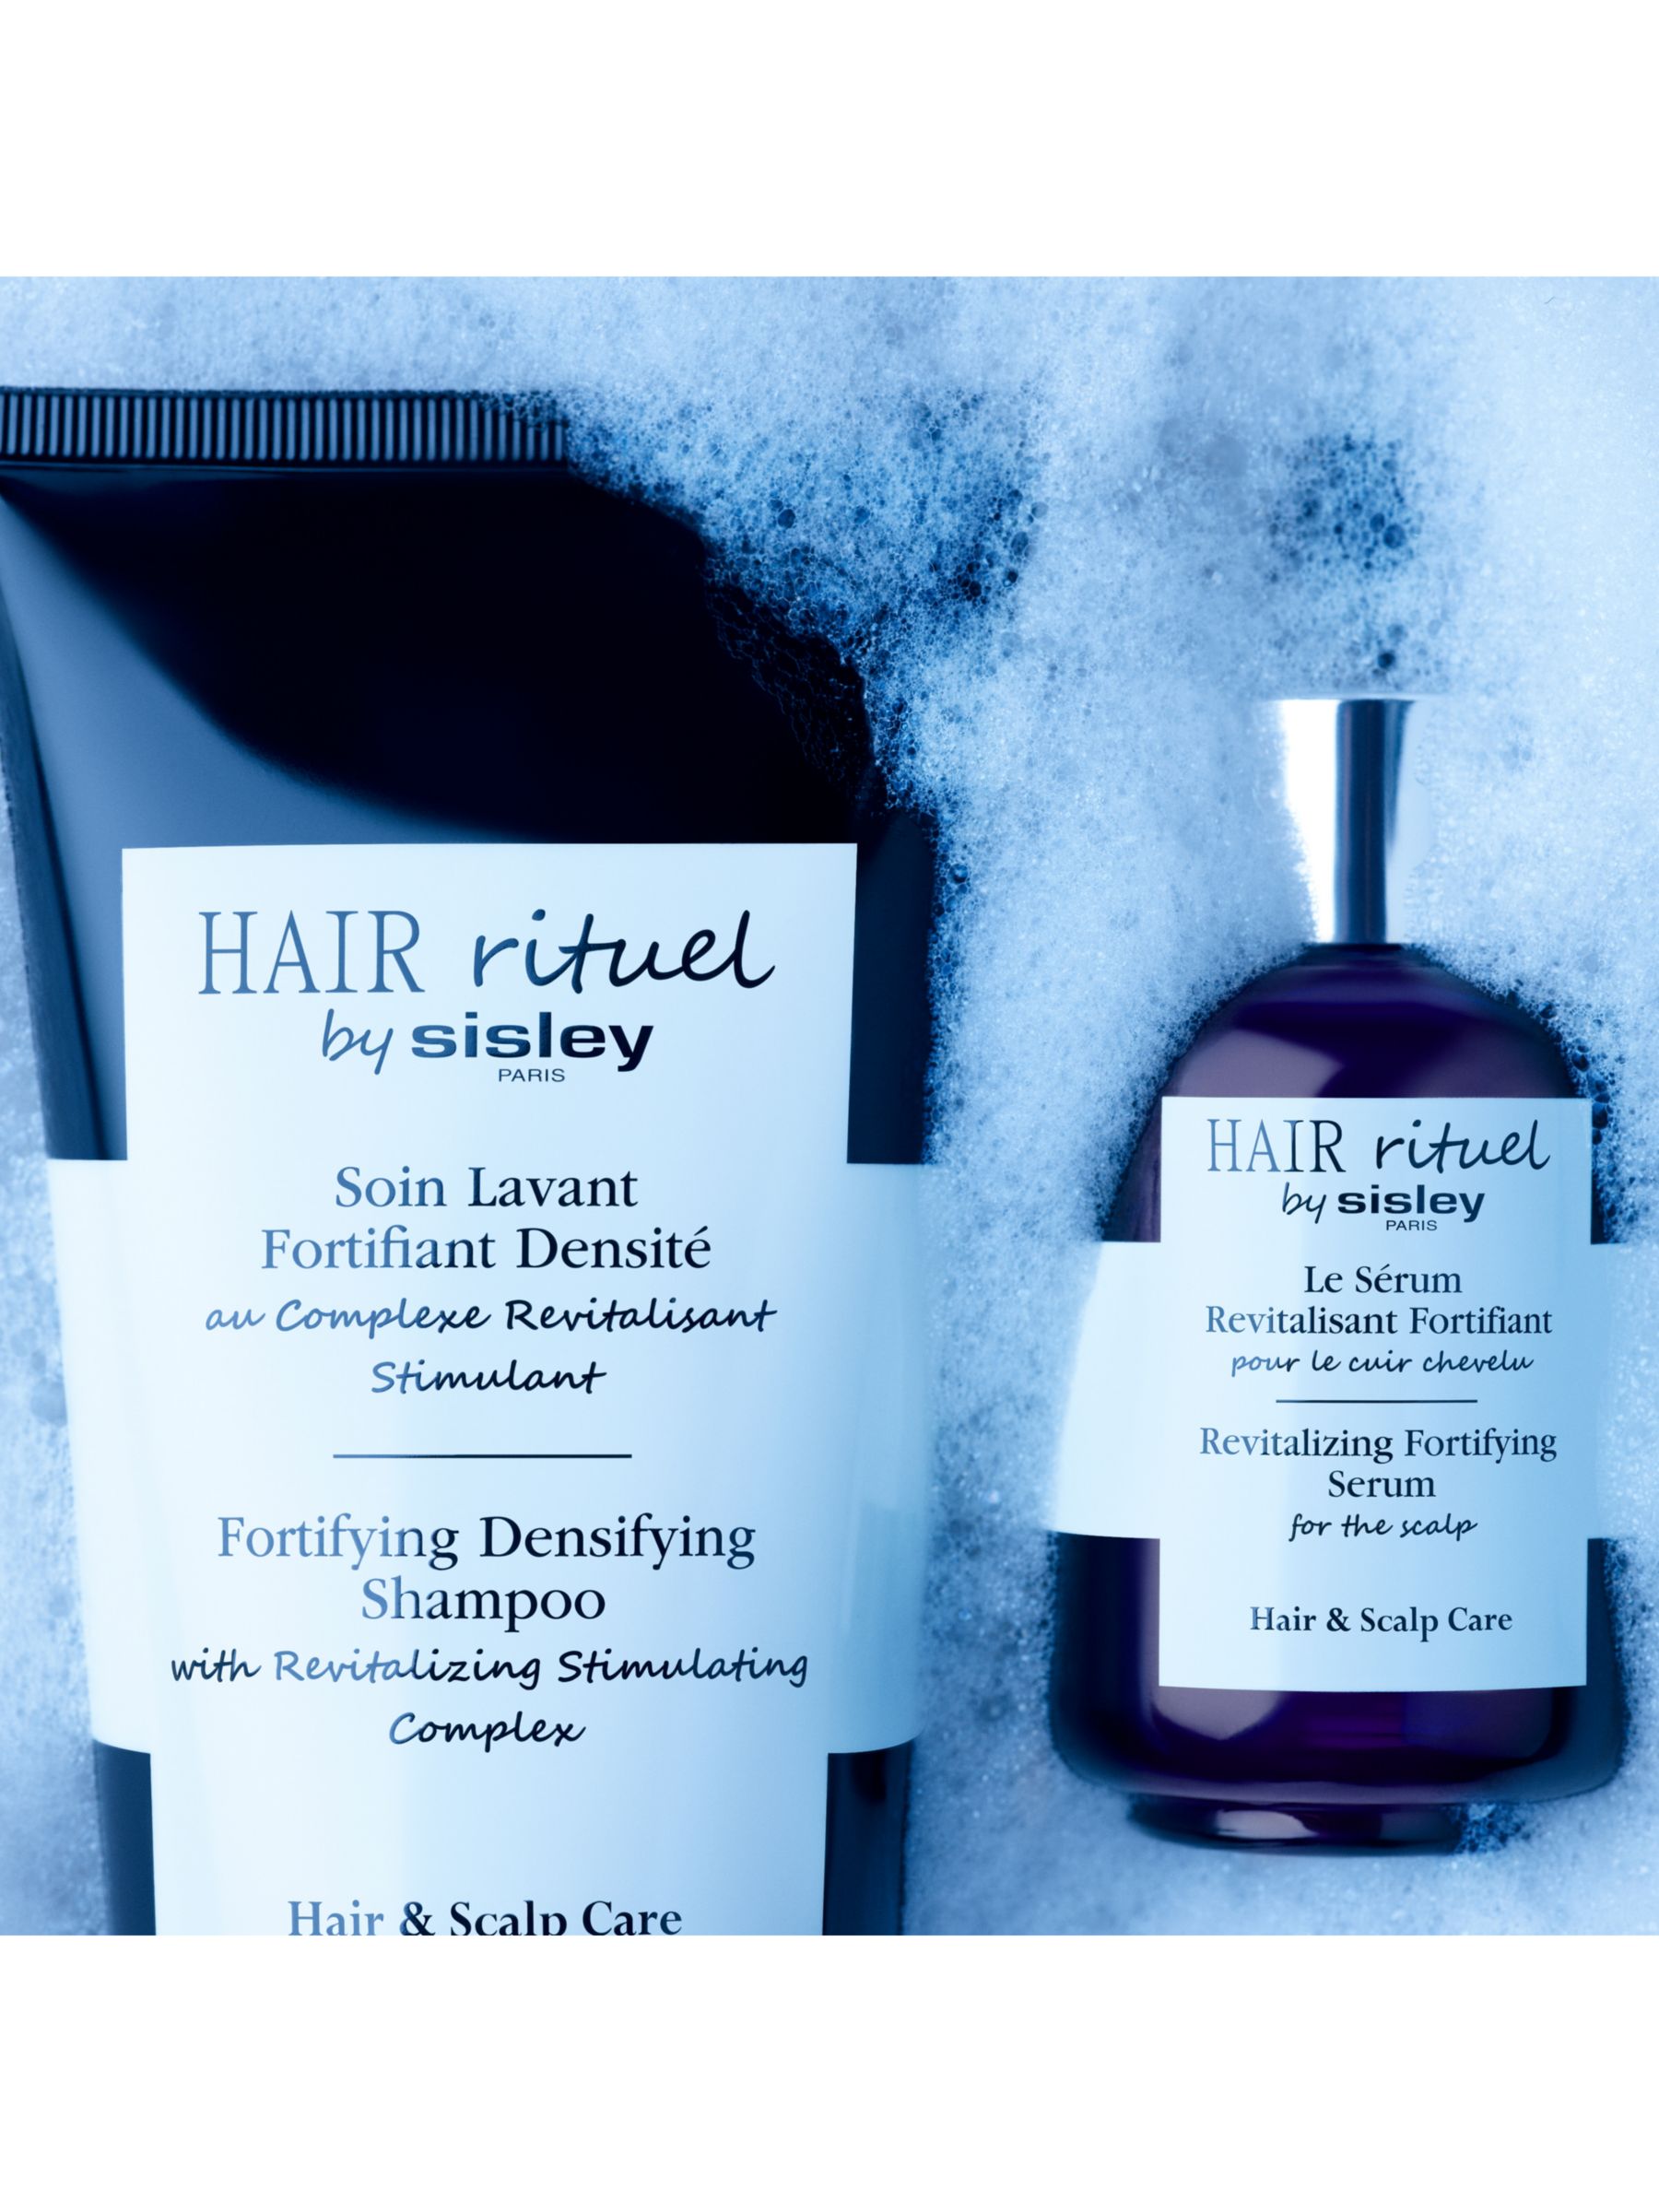 Sisley-Paris Fortifying Densifying Shampoo, 500ml 2